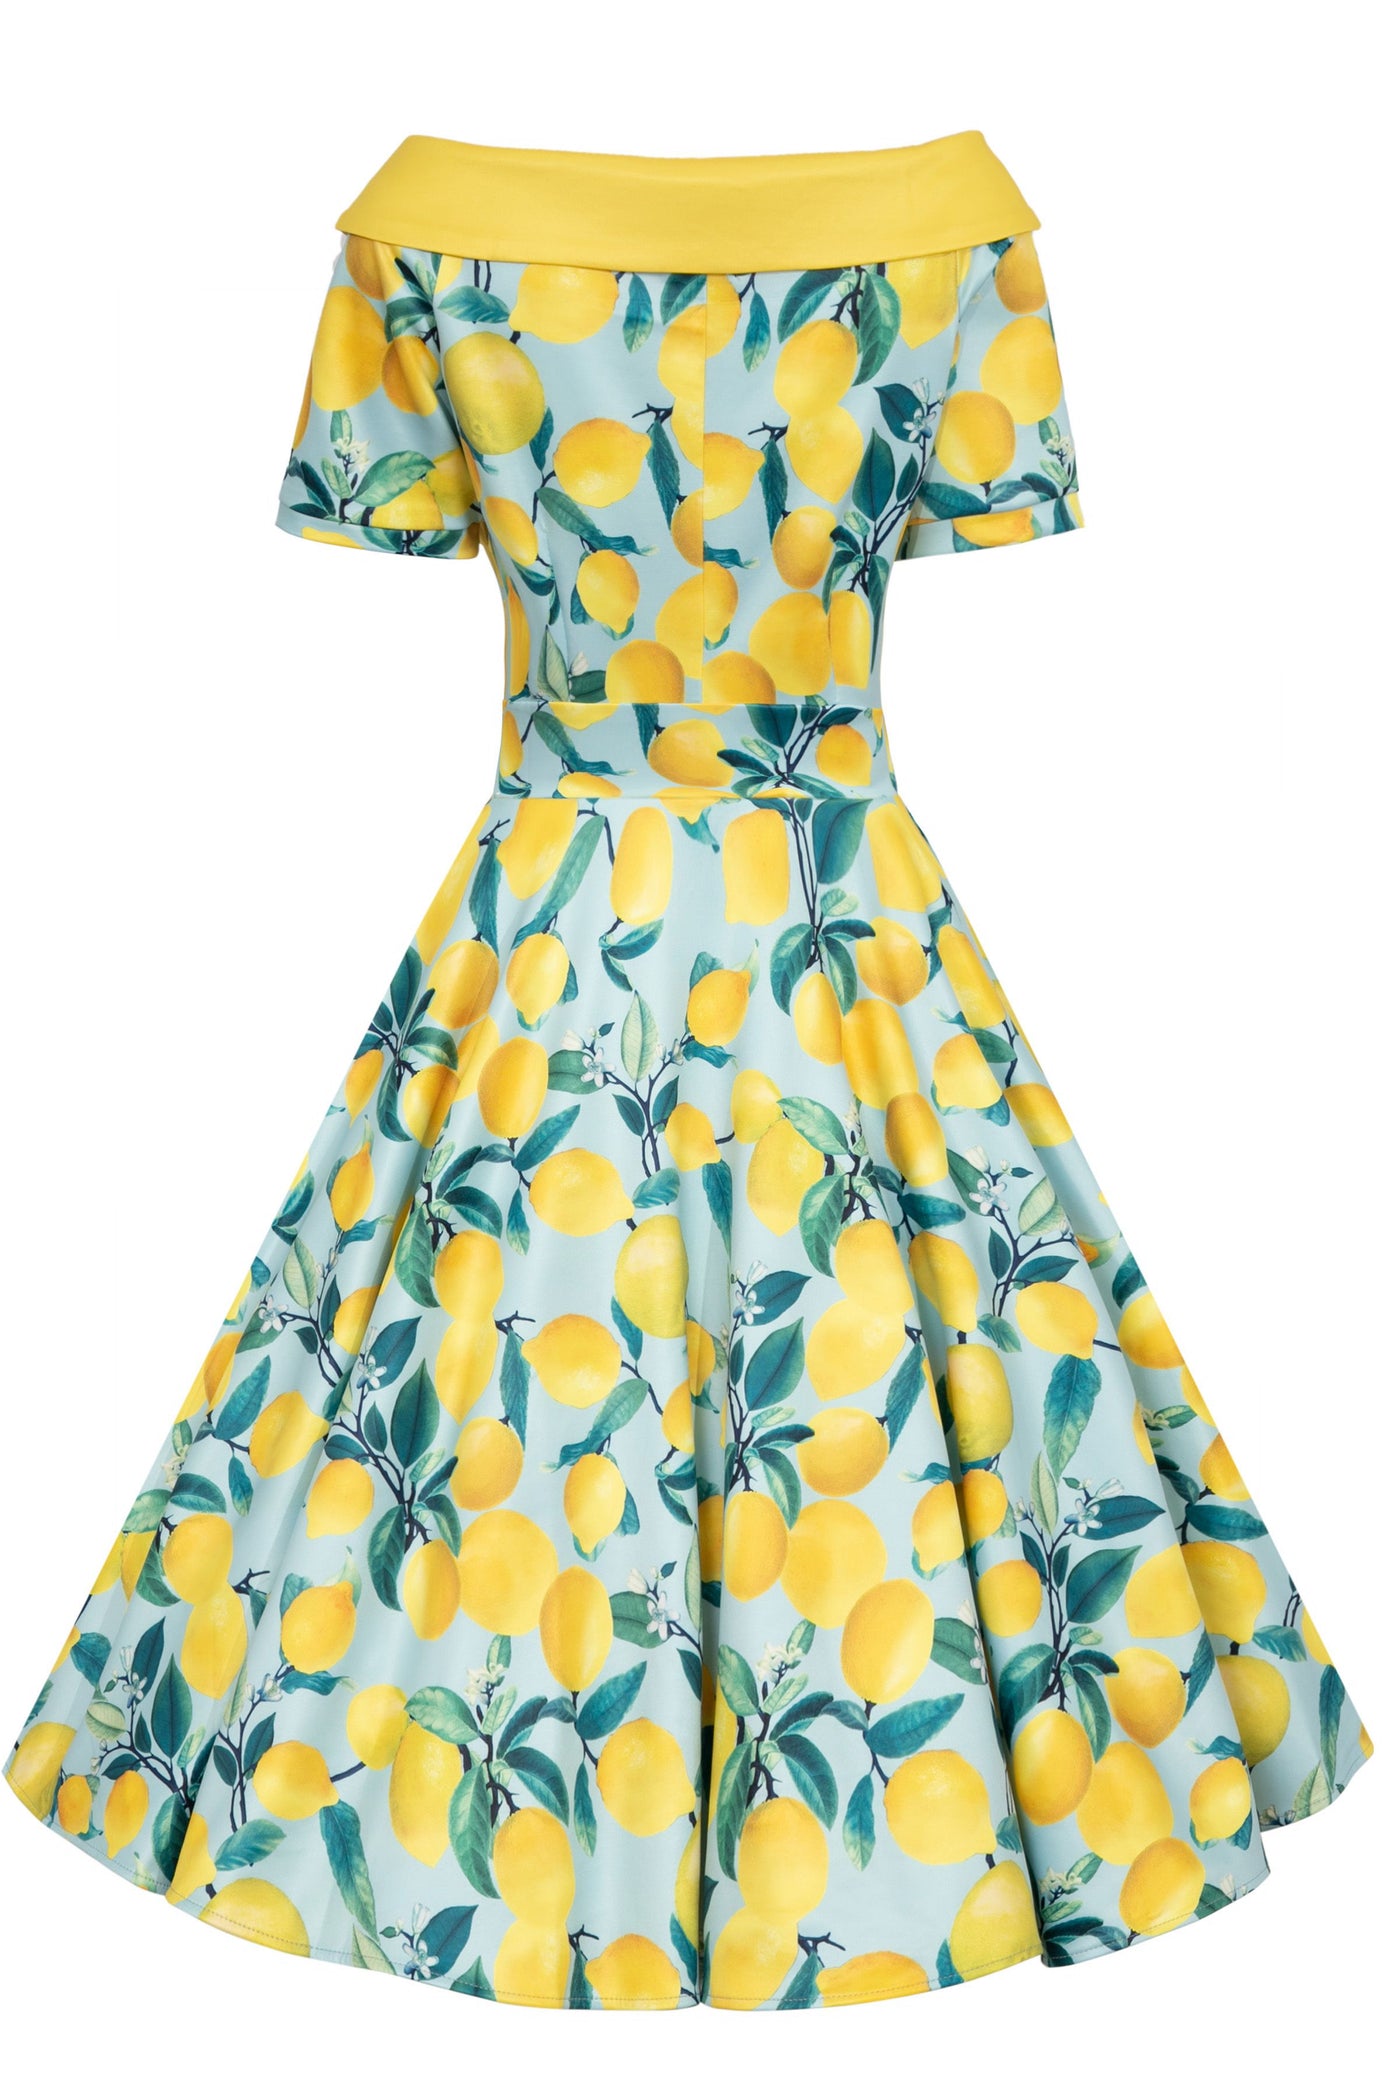 Model wears our bateau short sleeved swing dress, in blue/yellow lemon print, back view